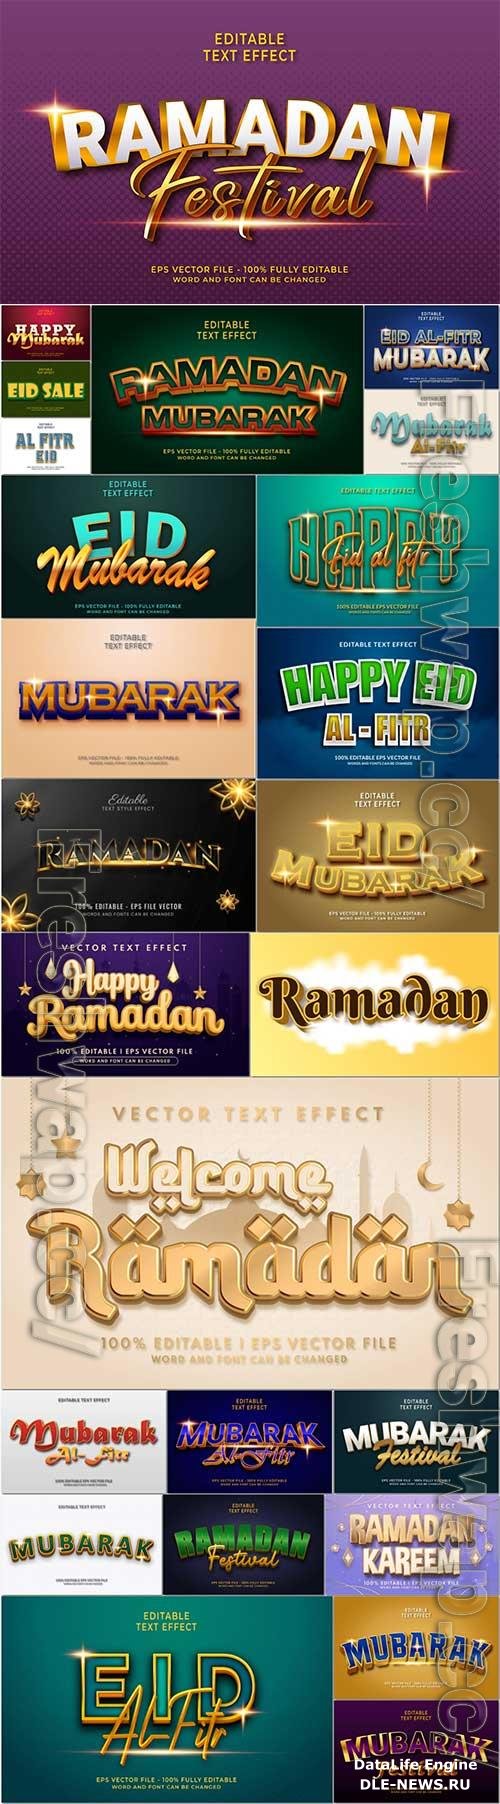 Eid mubarak, Ramadan editable text effect premium vector